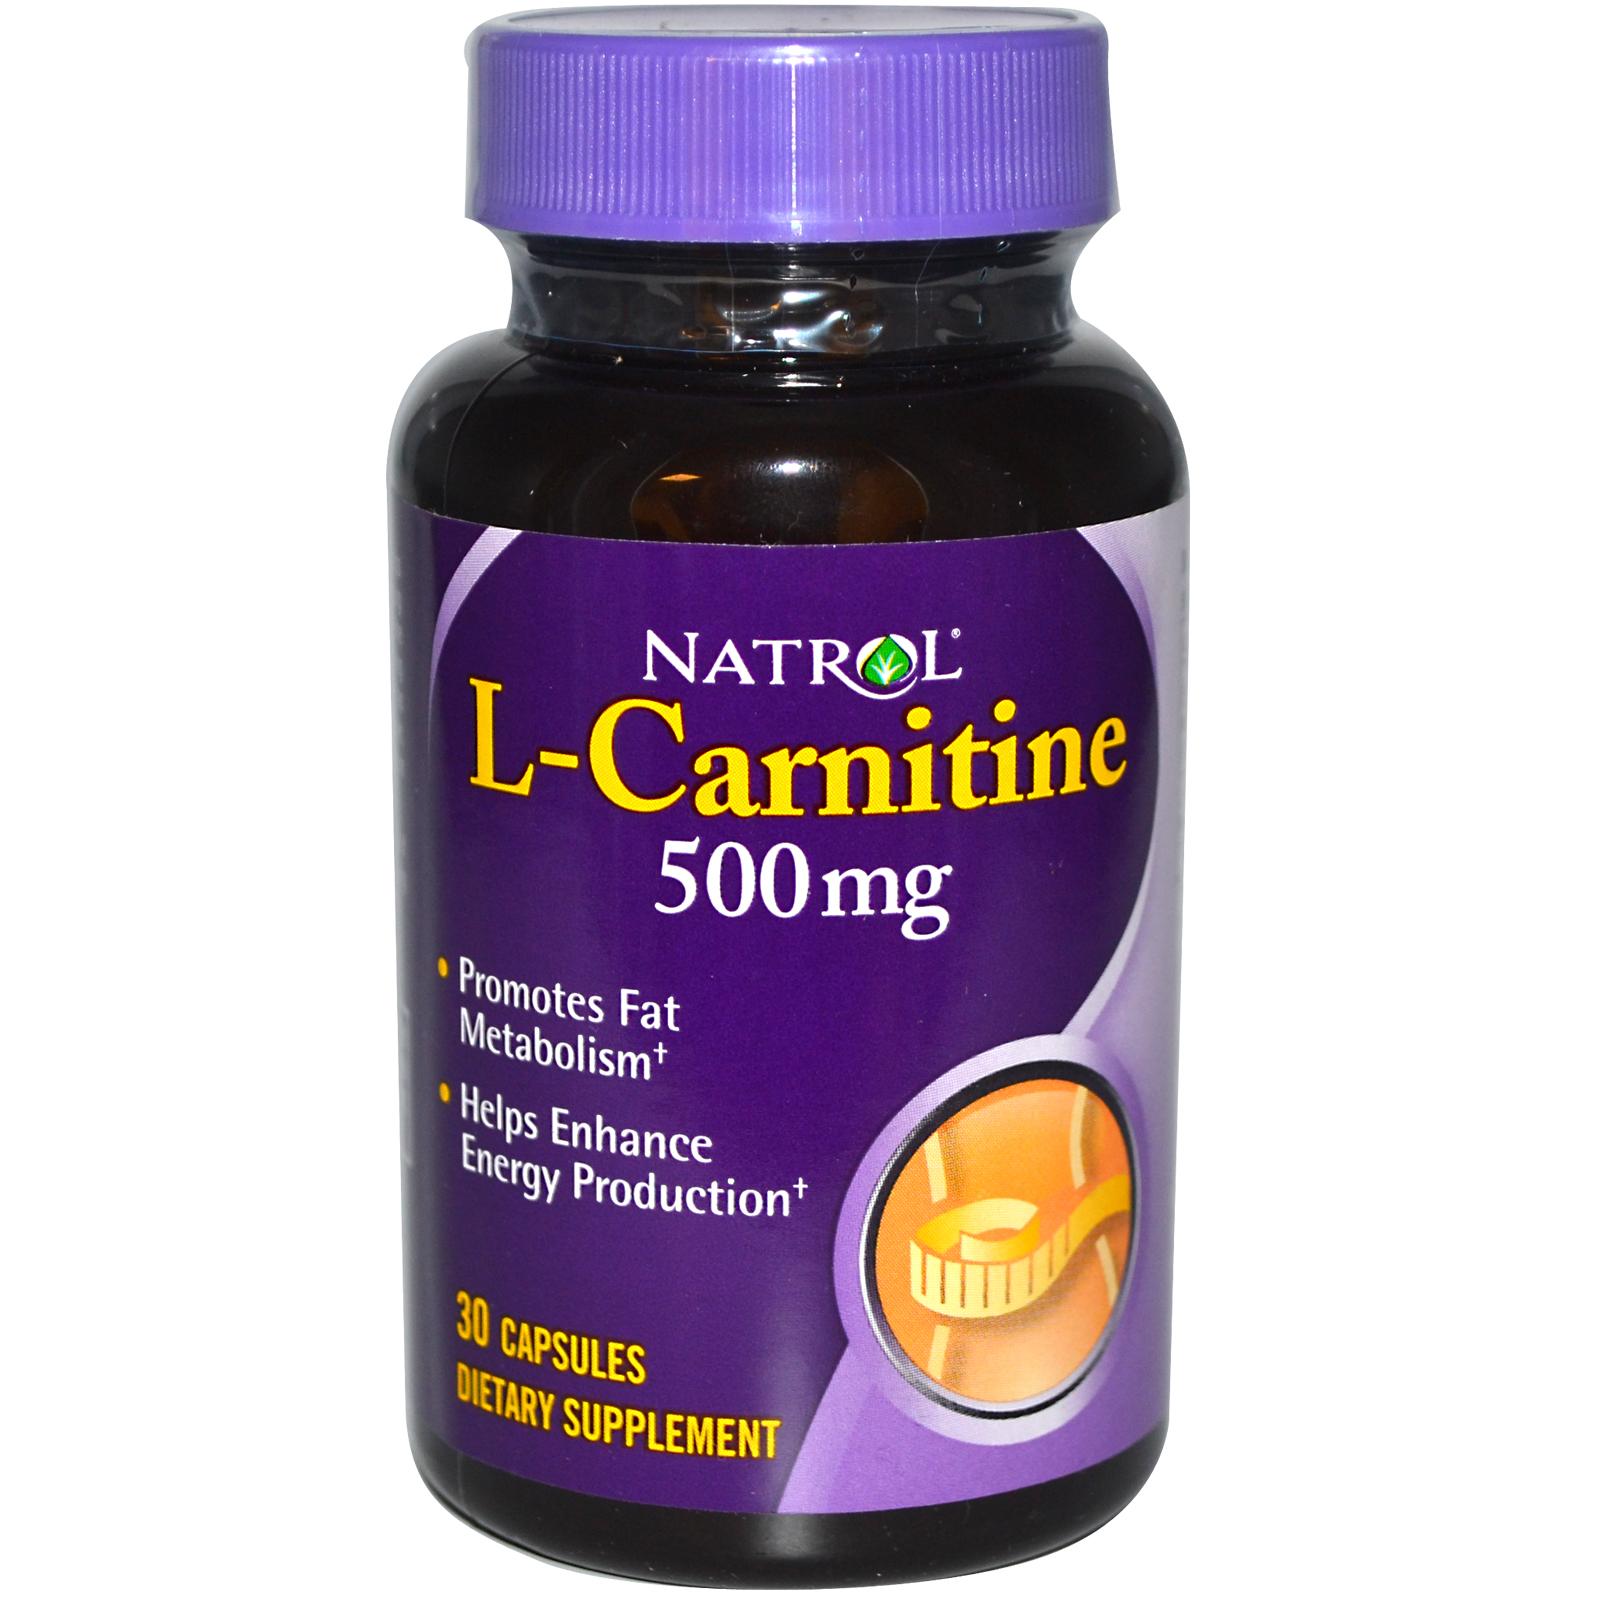 NATROL L-Carnitine